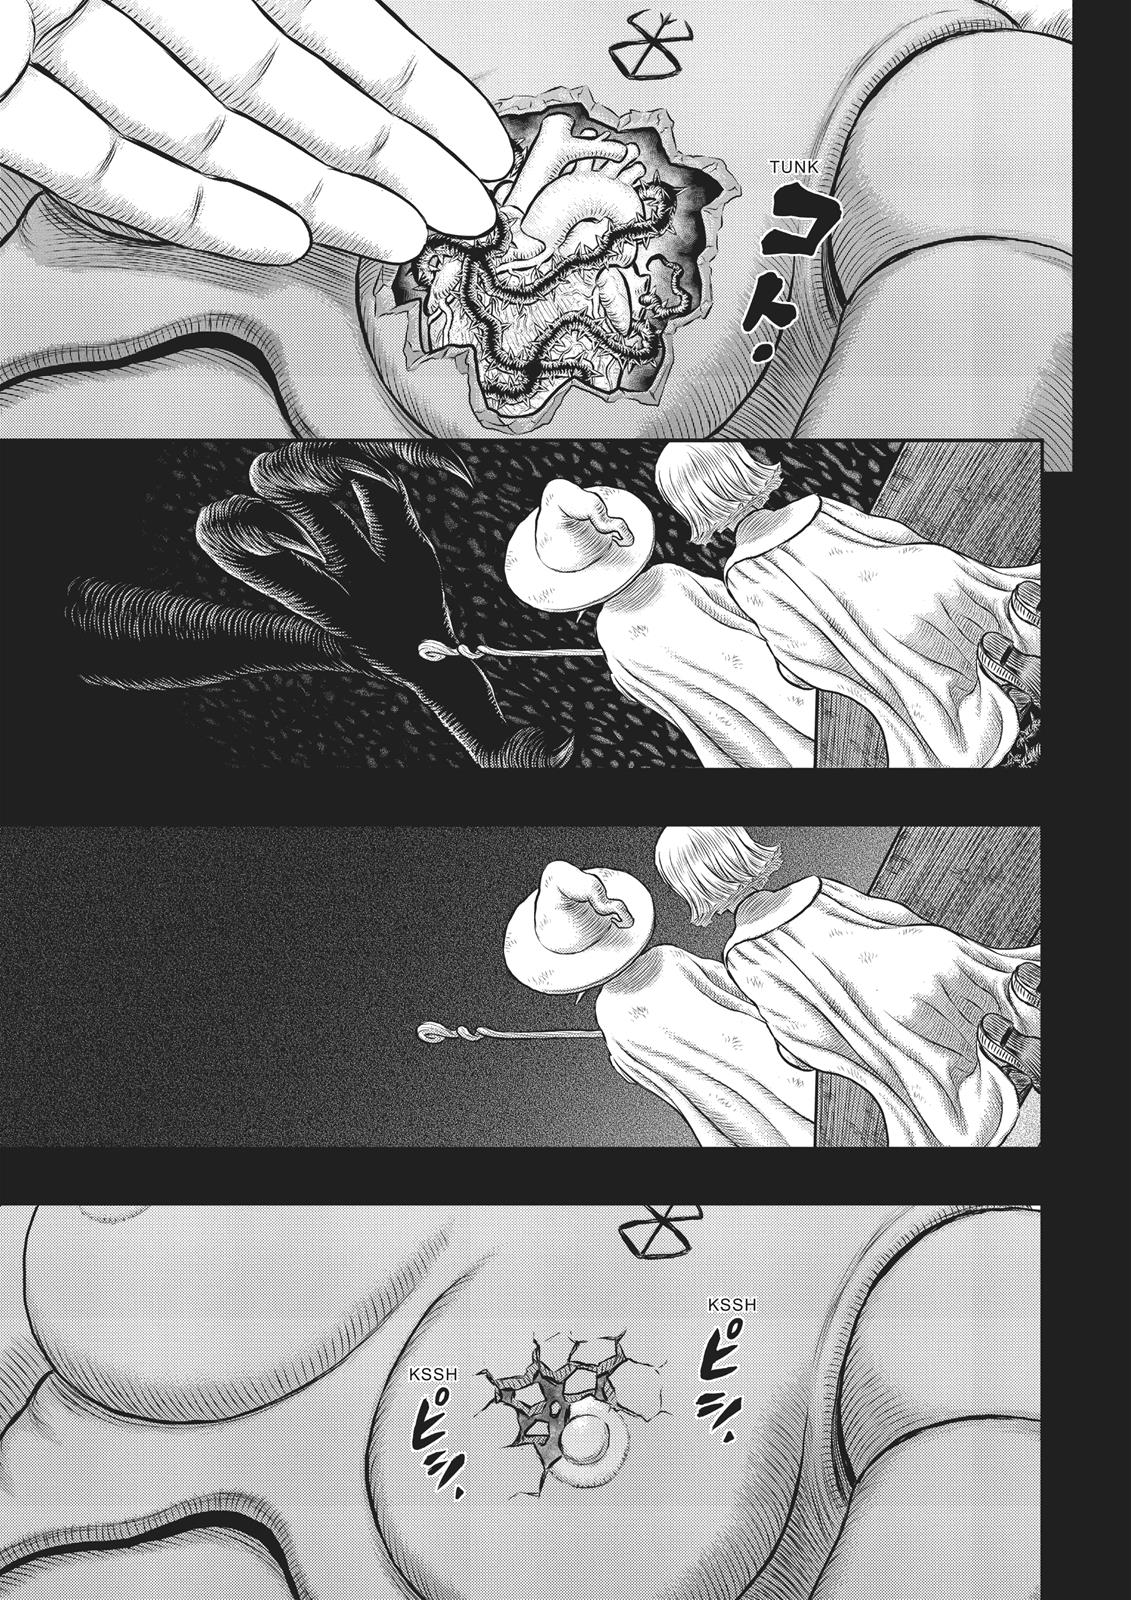 Berserk Manga Chapter 354 image 15